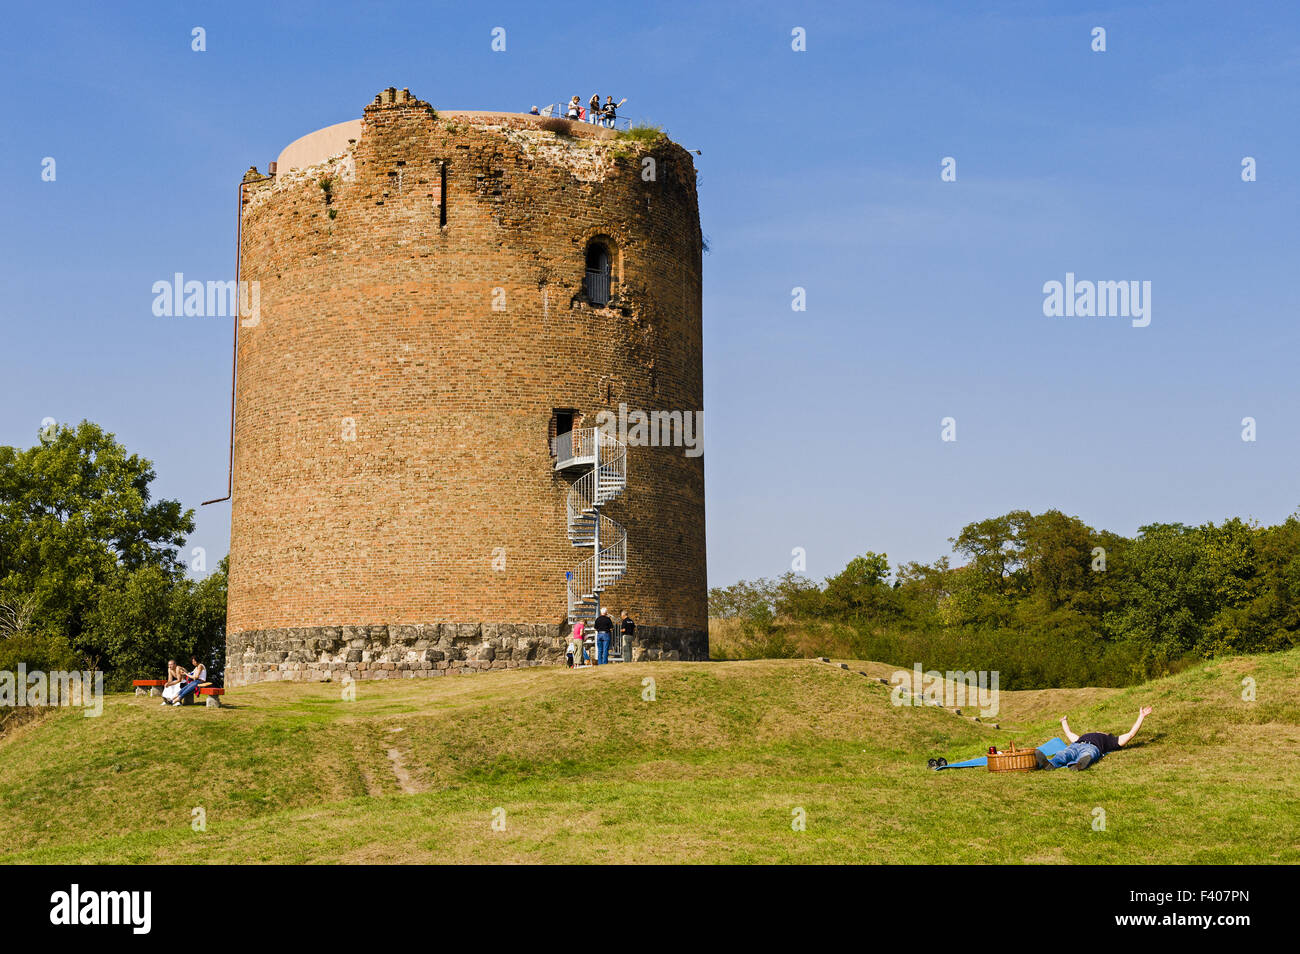 Donjon of Stolpe Castle, Stolpe, Germany Stock Photo